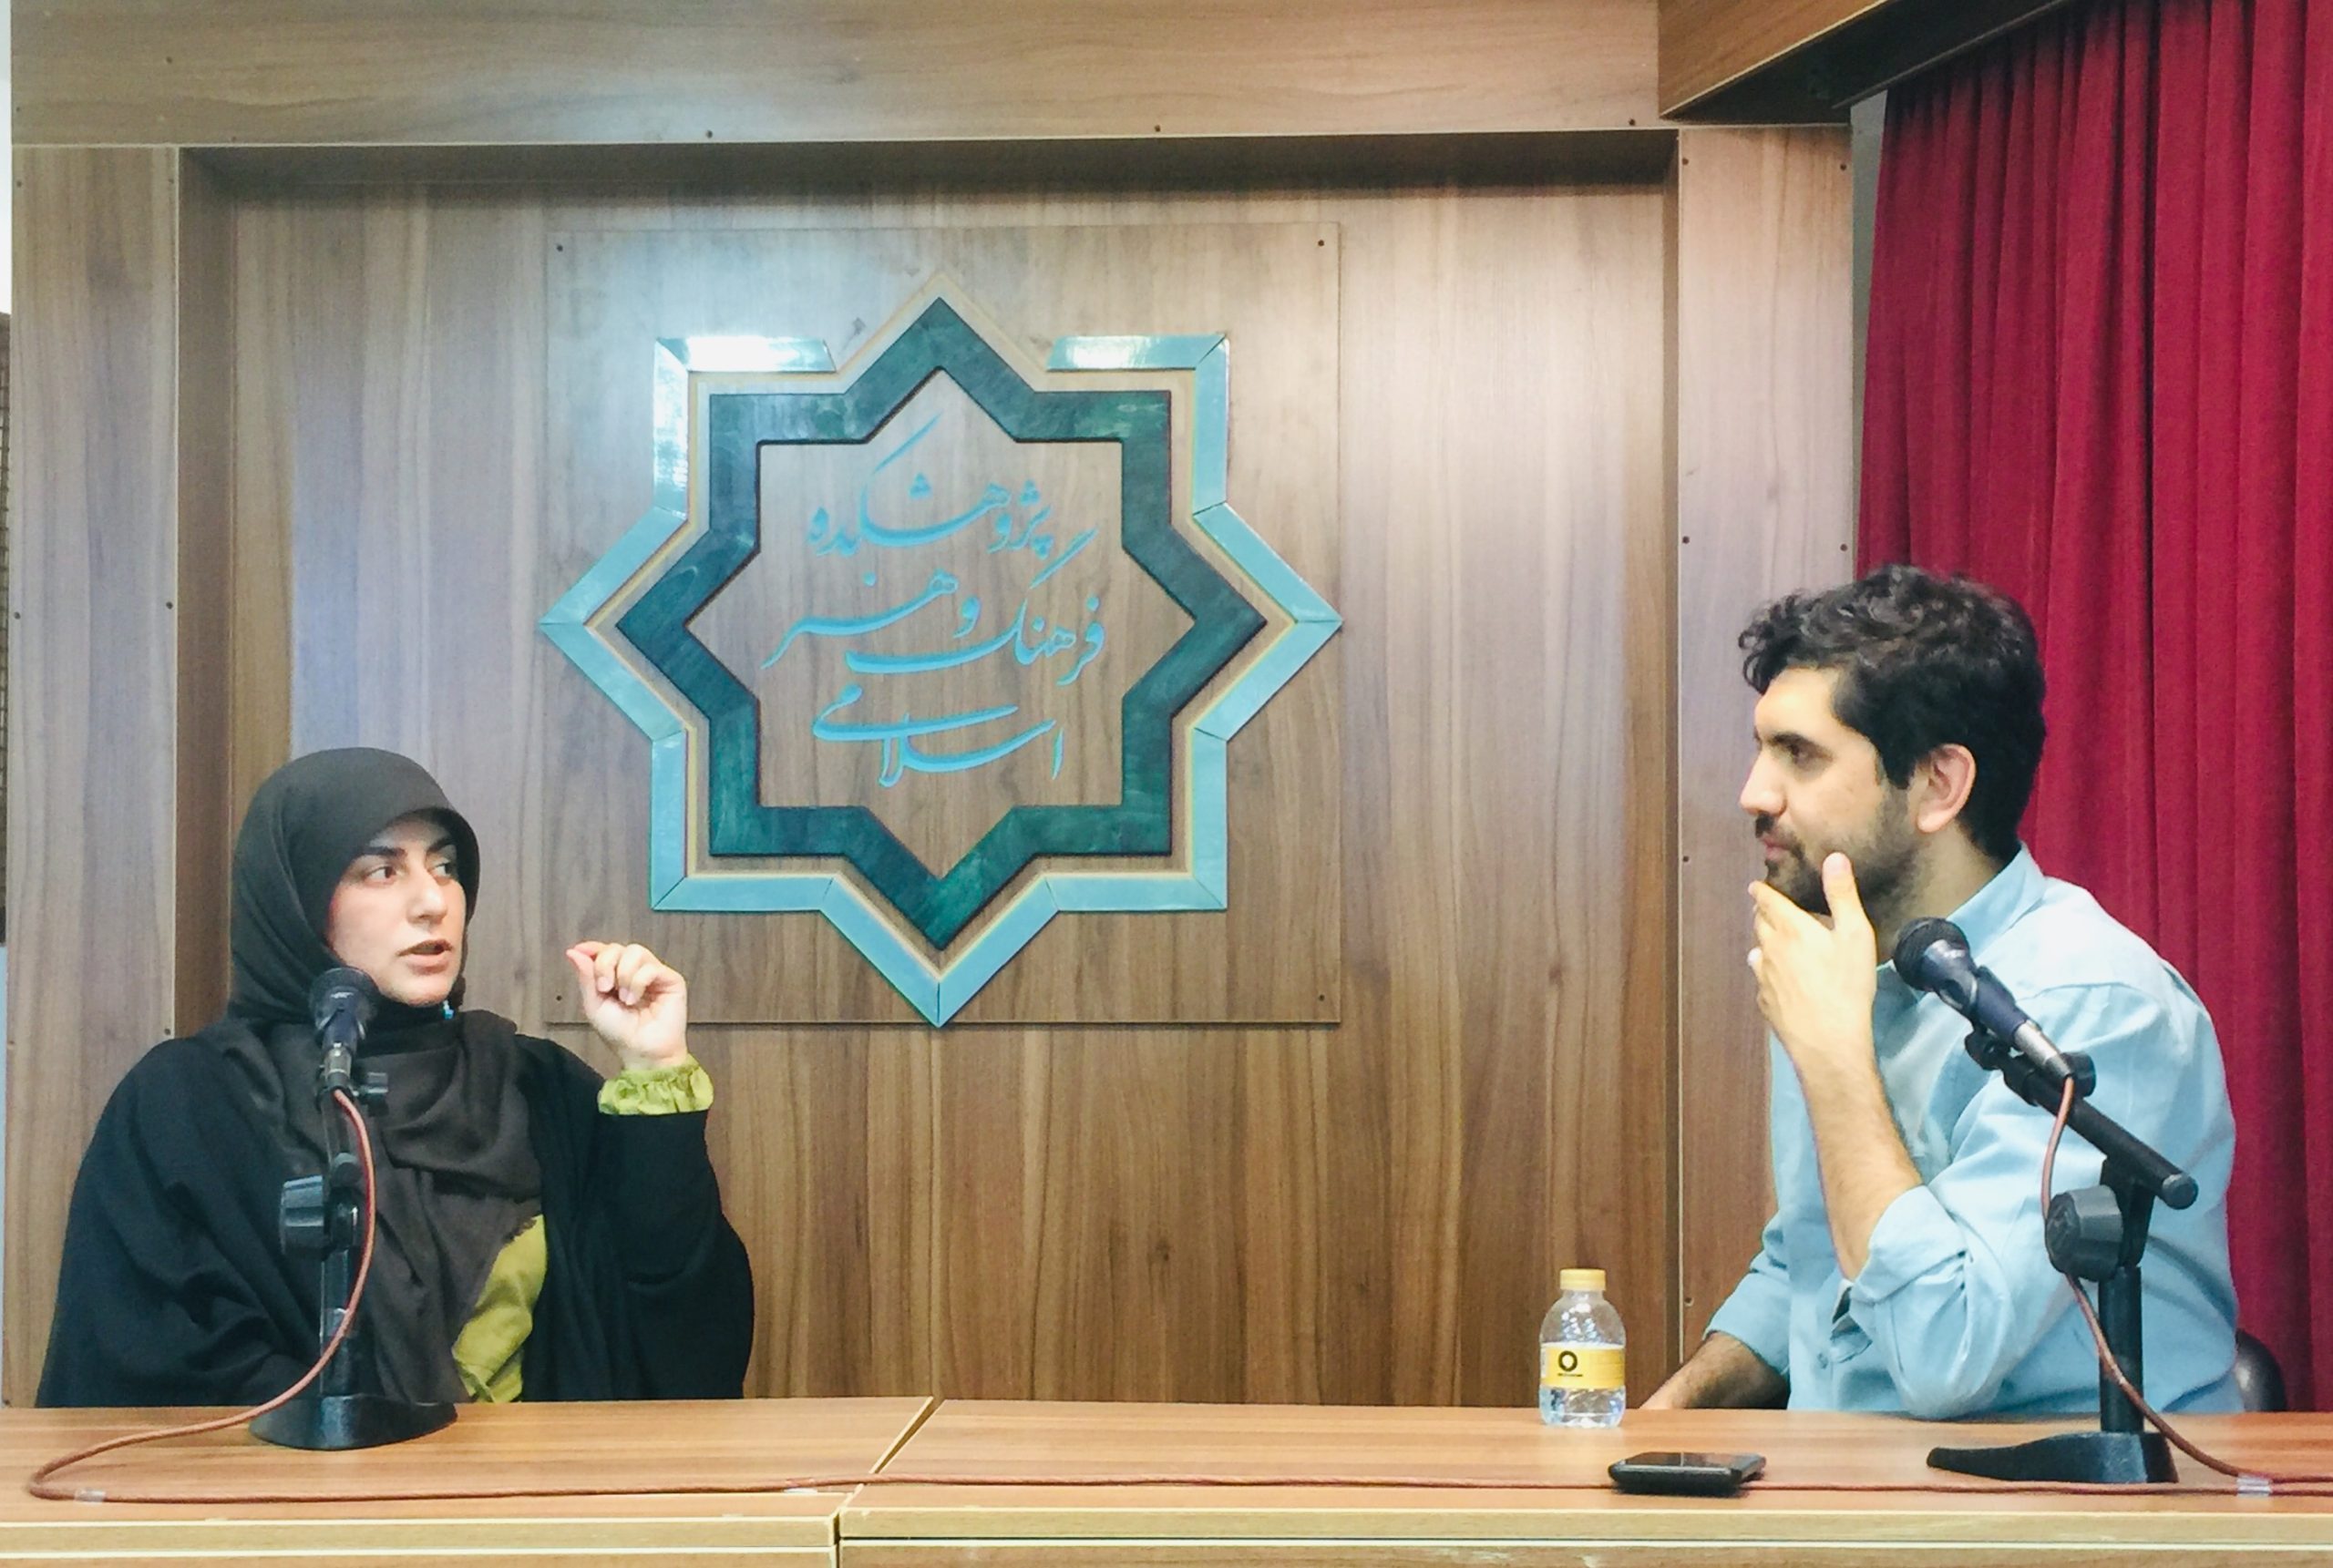 نشست هشتم “صنعت بازی در ایران” با حضور زینب موسوی